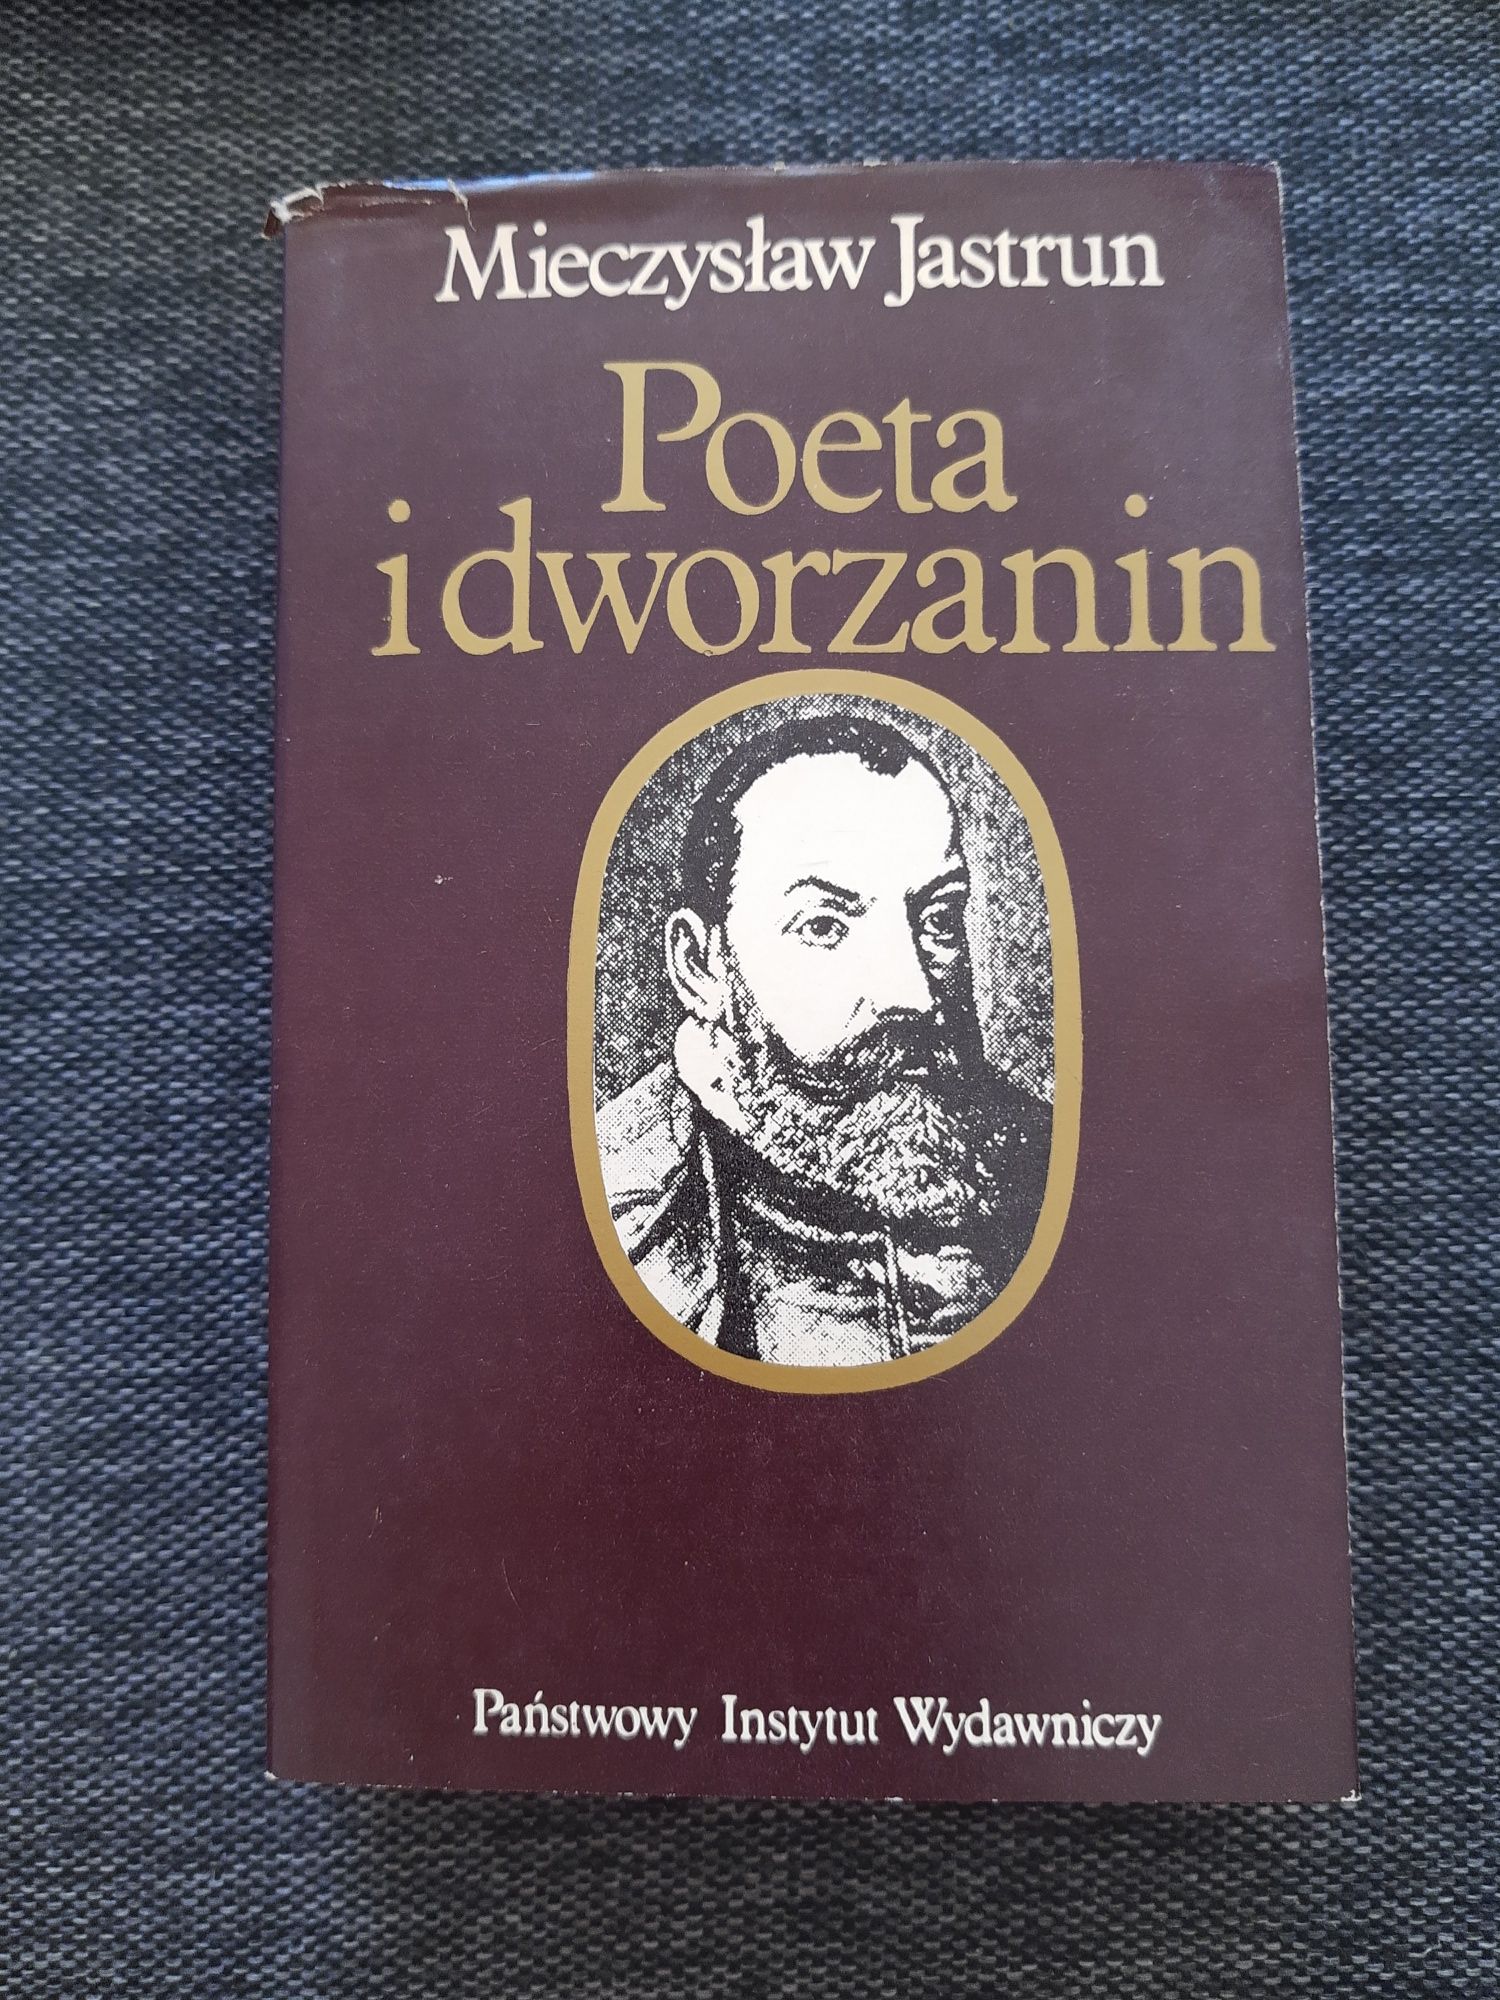 Poeta i dworzanin Mieczysław Jastrun - piękne wydanie